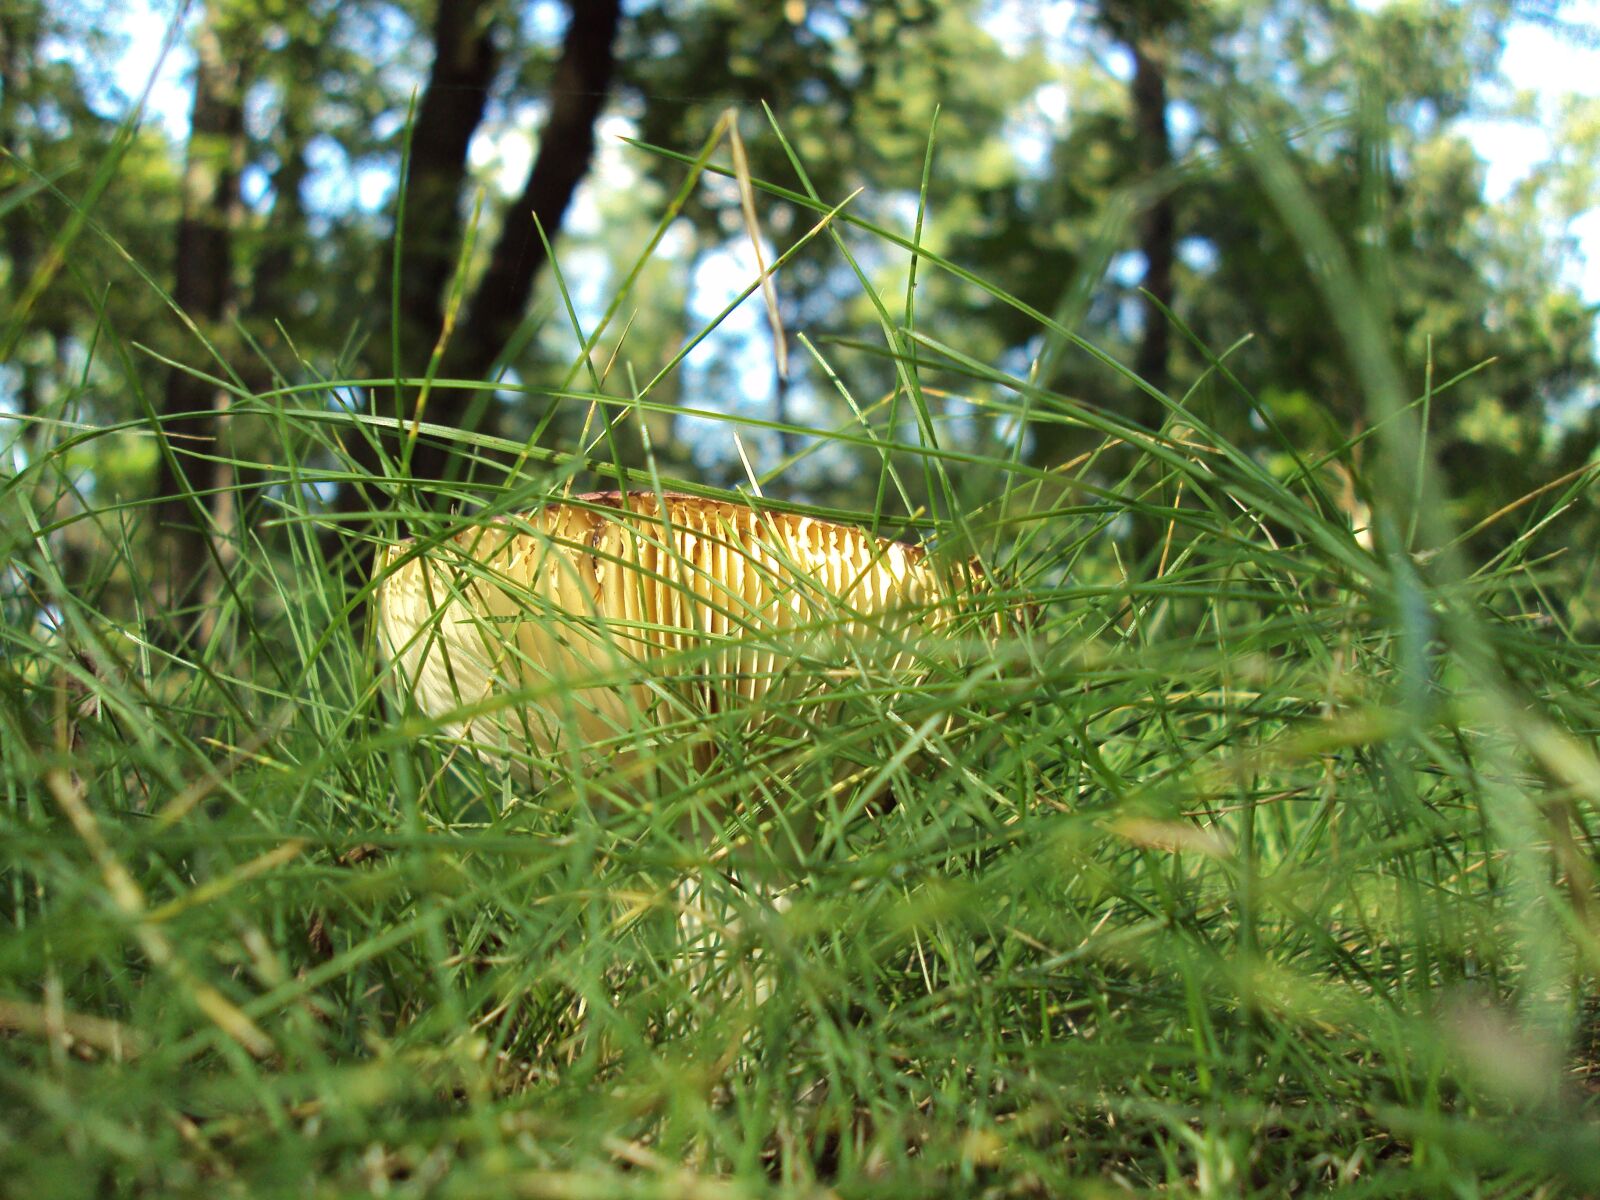 Sony DSC-S950 sample photo. Boletus, grass, macro photography